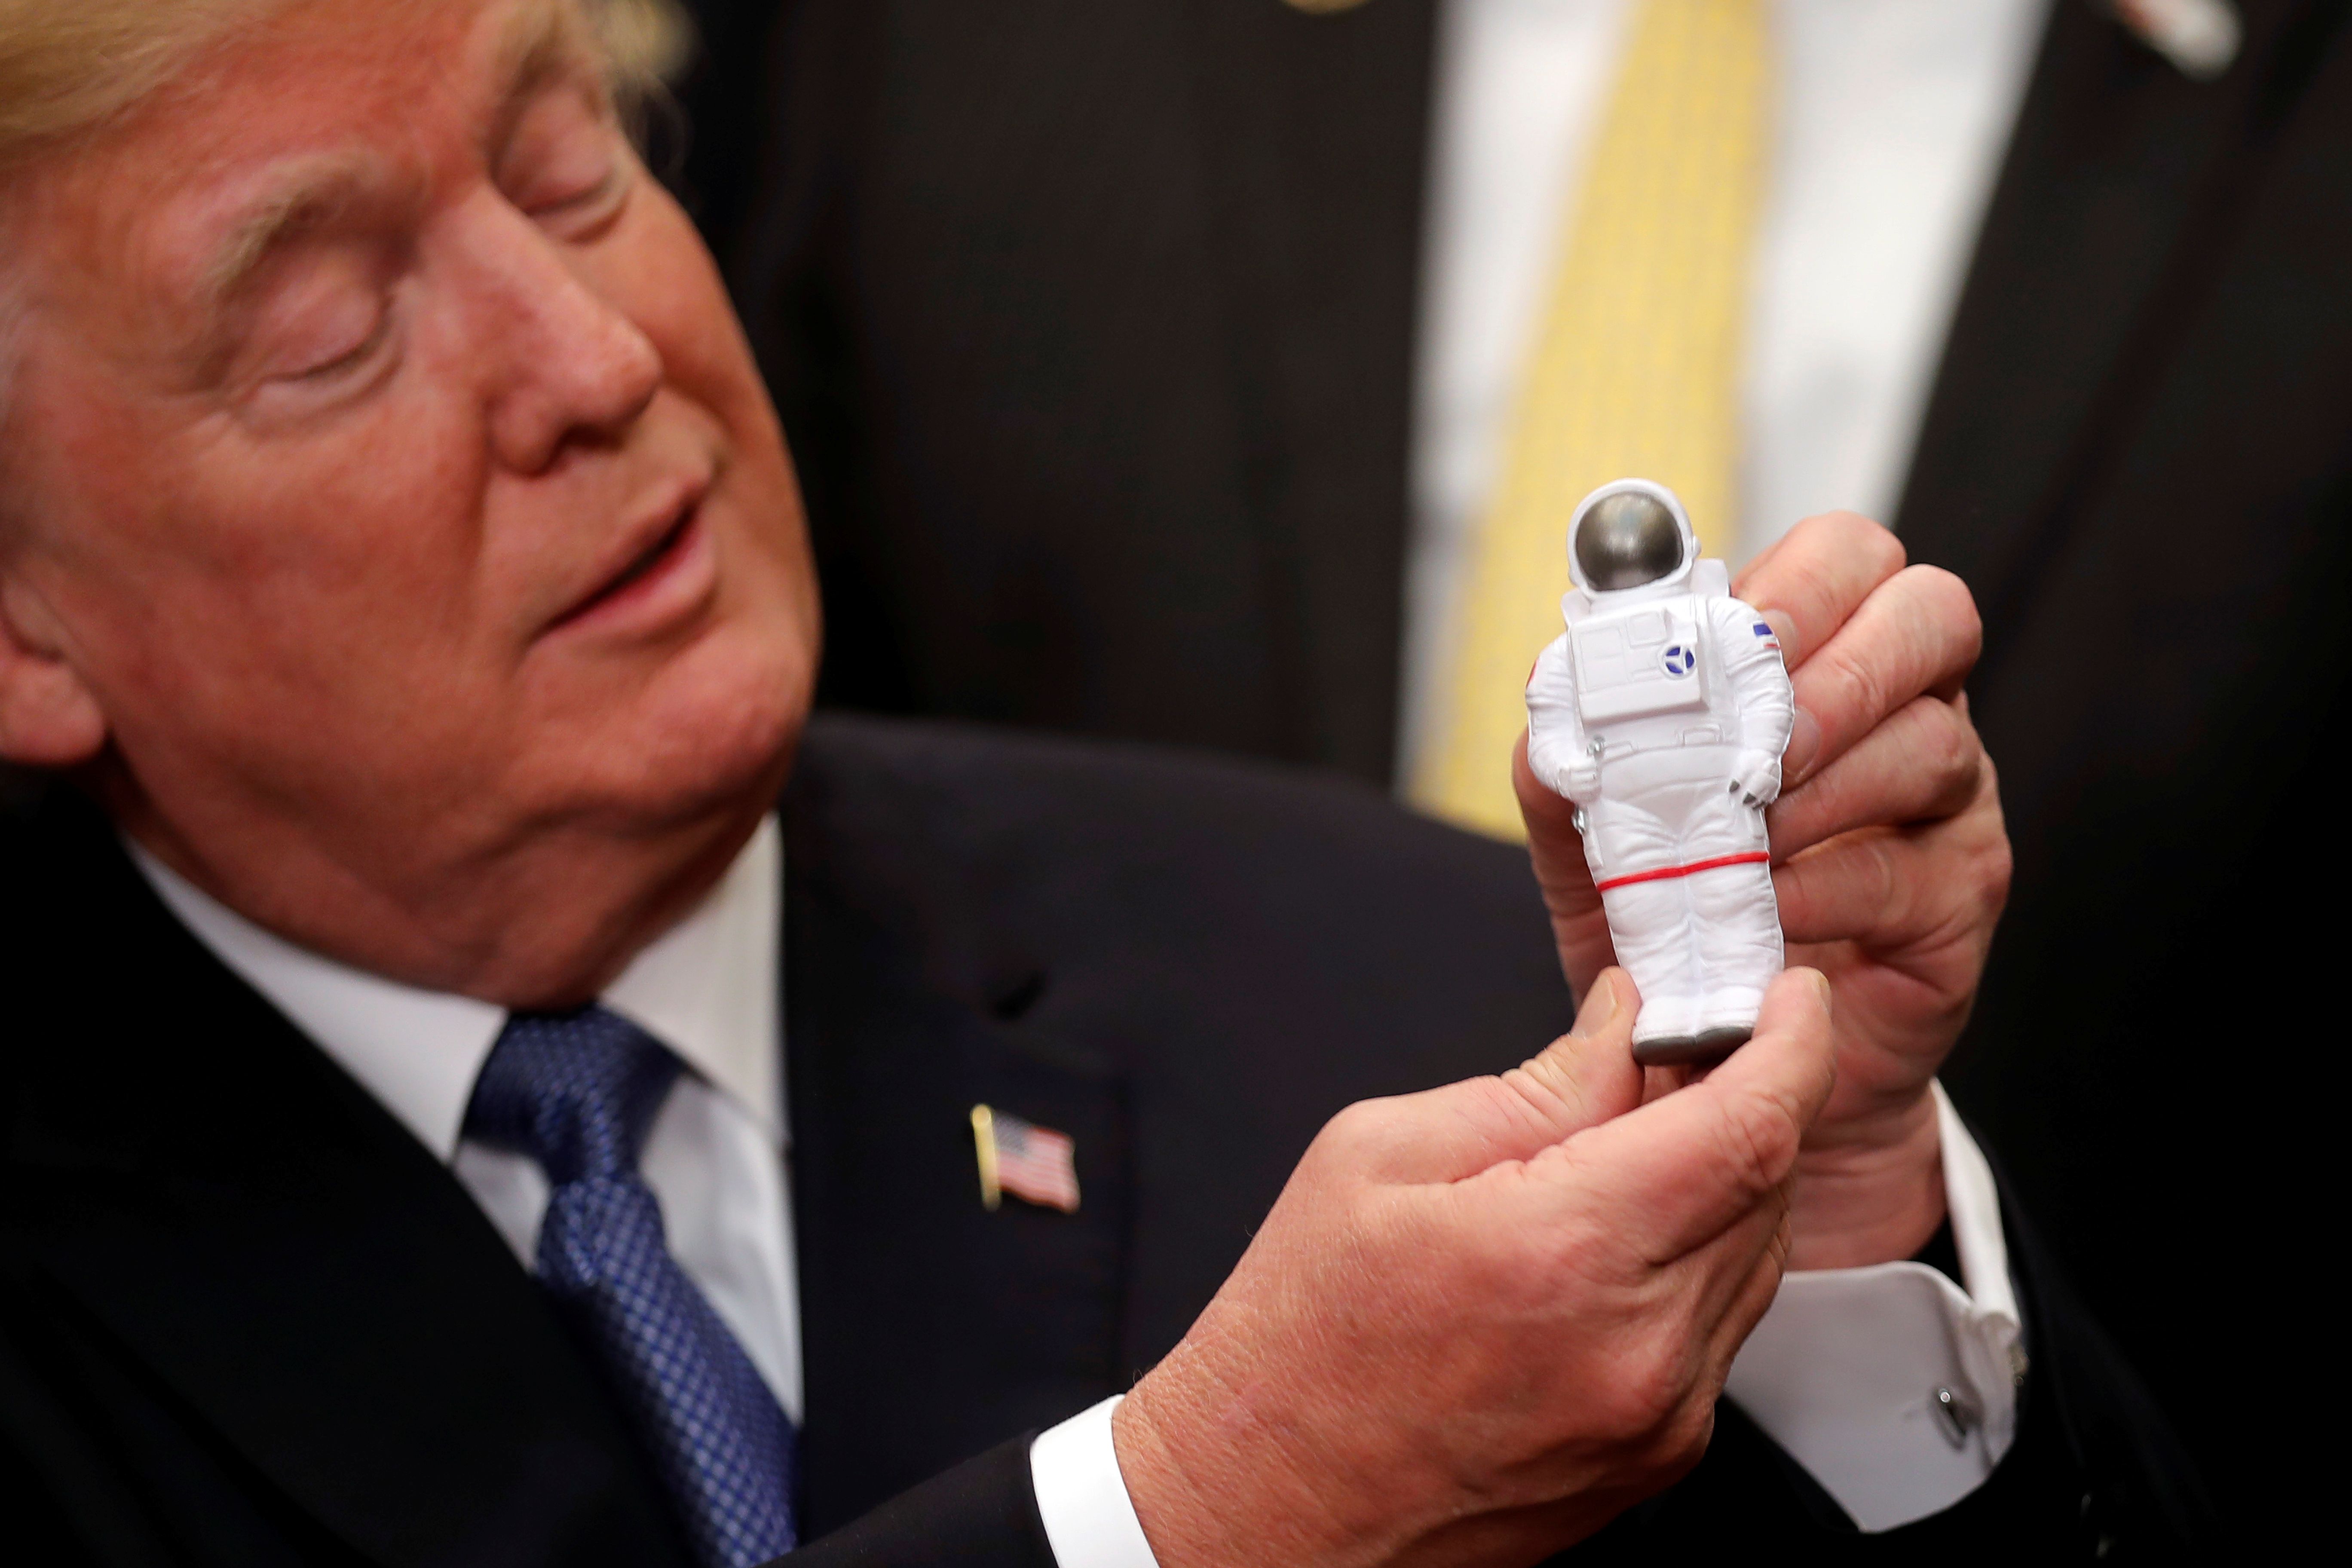 Trump wants NASA to go to Mars, not the moon